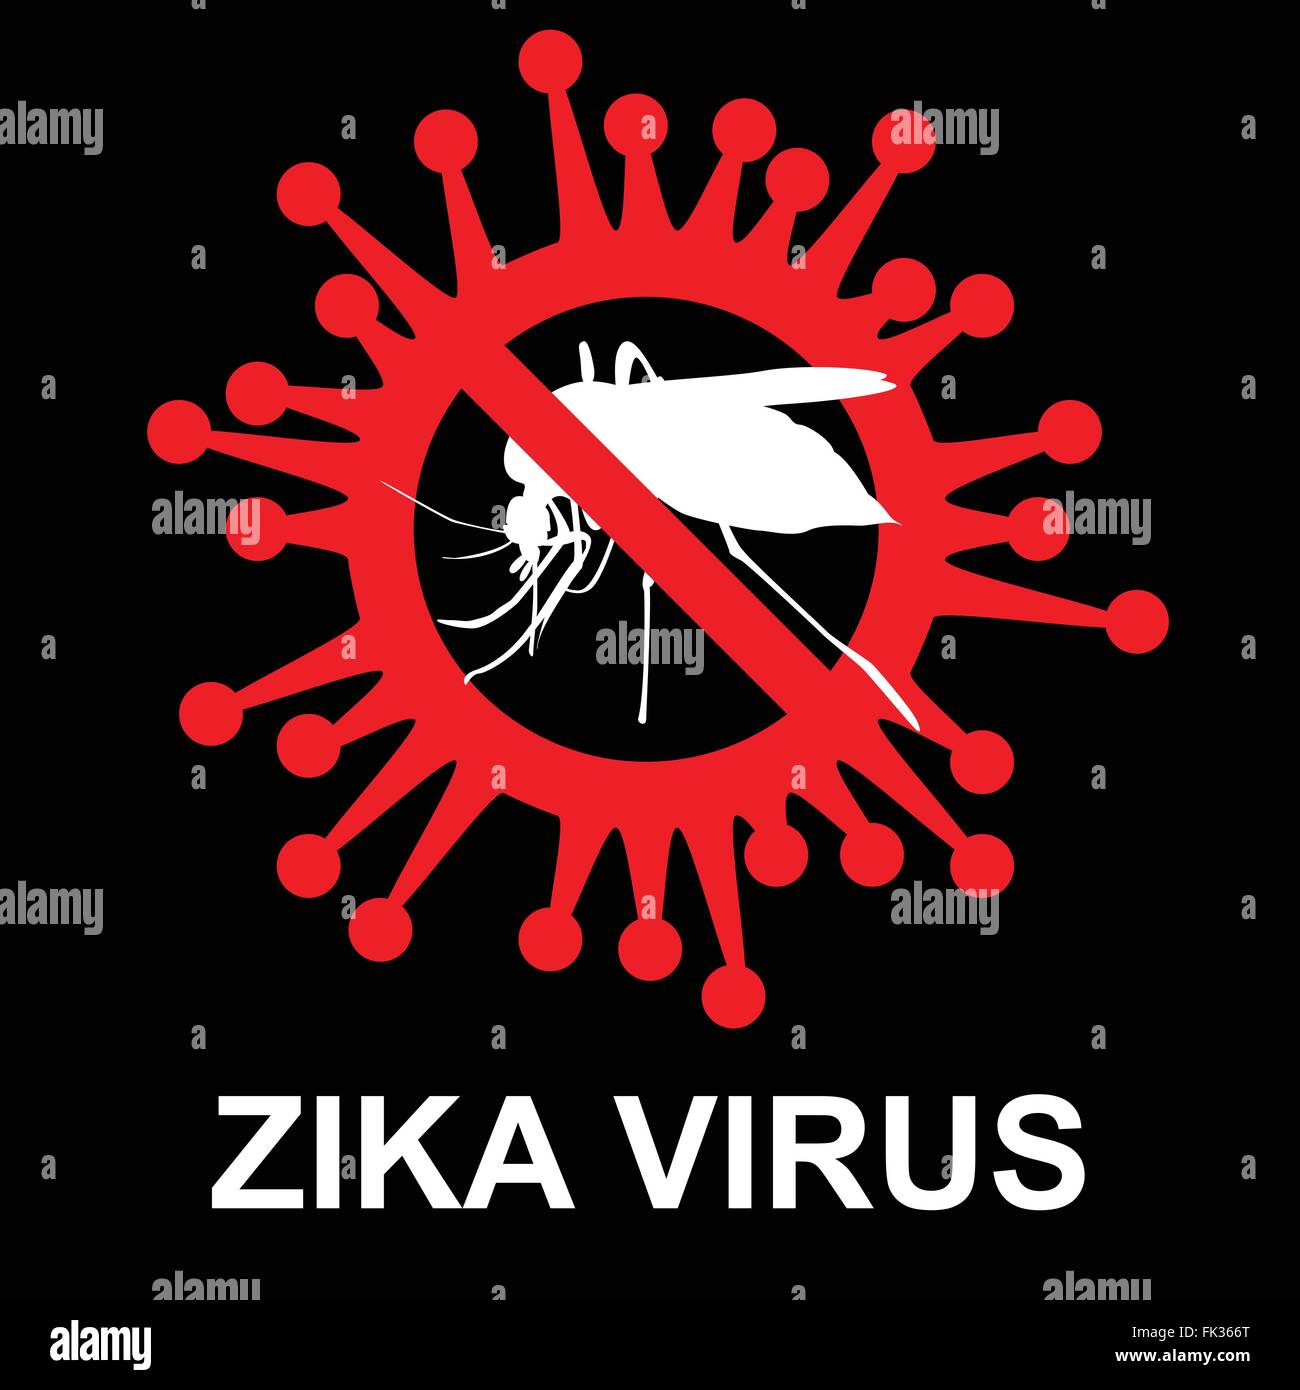 Stop zika virus, vector Stock Vector